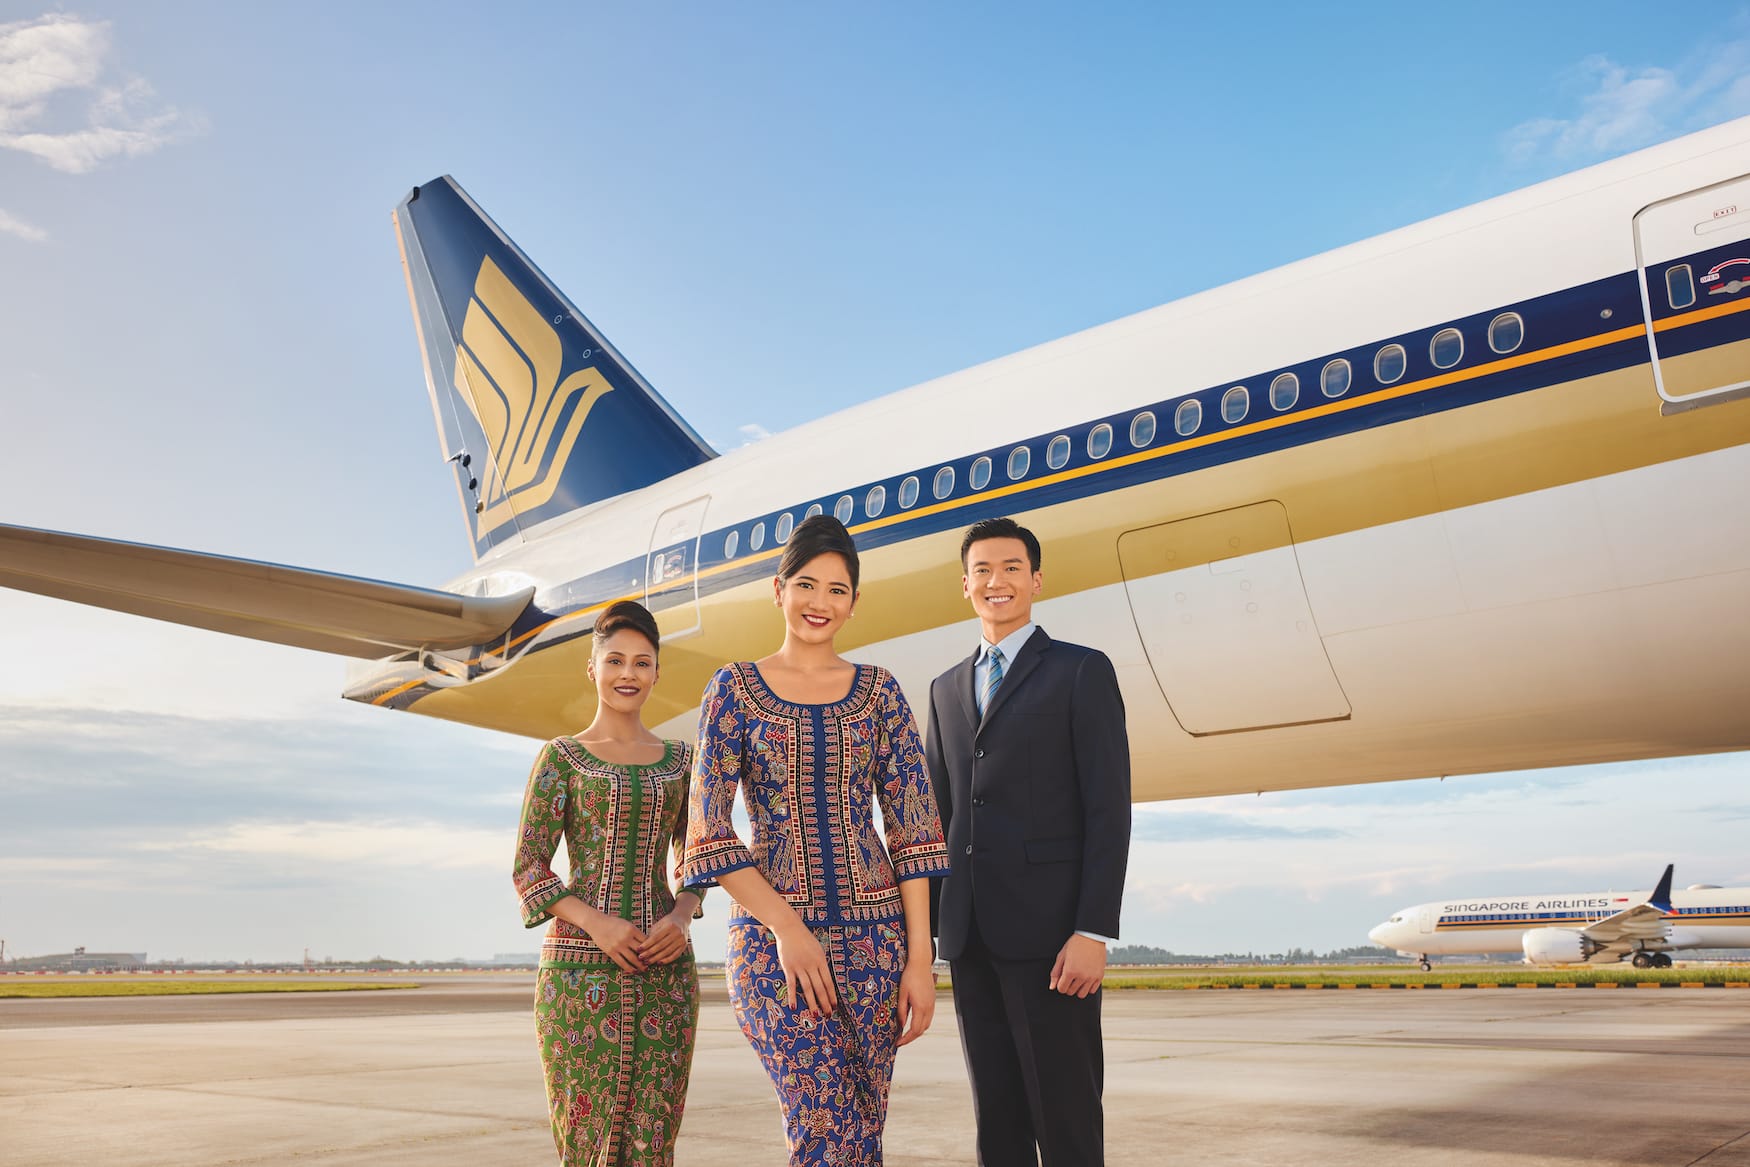 zur weltbesten Airline gewählt: Singapore Airlines